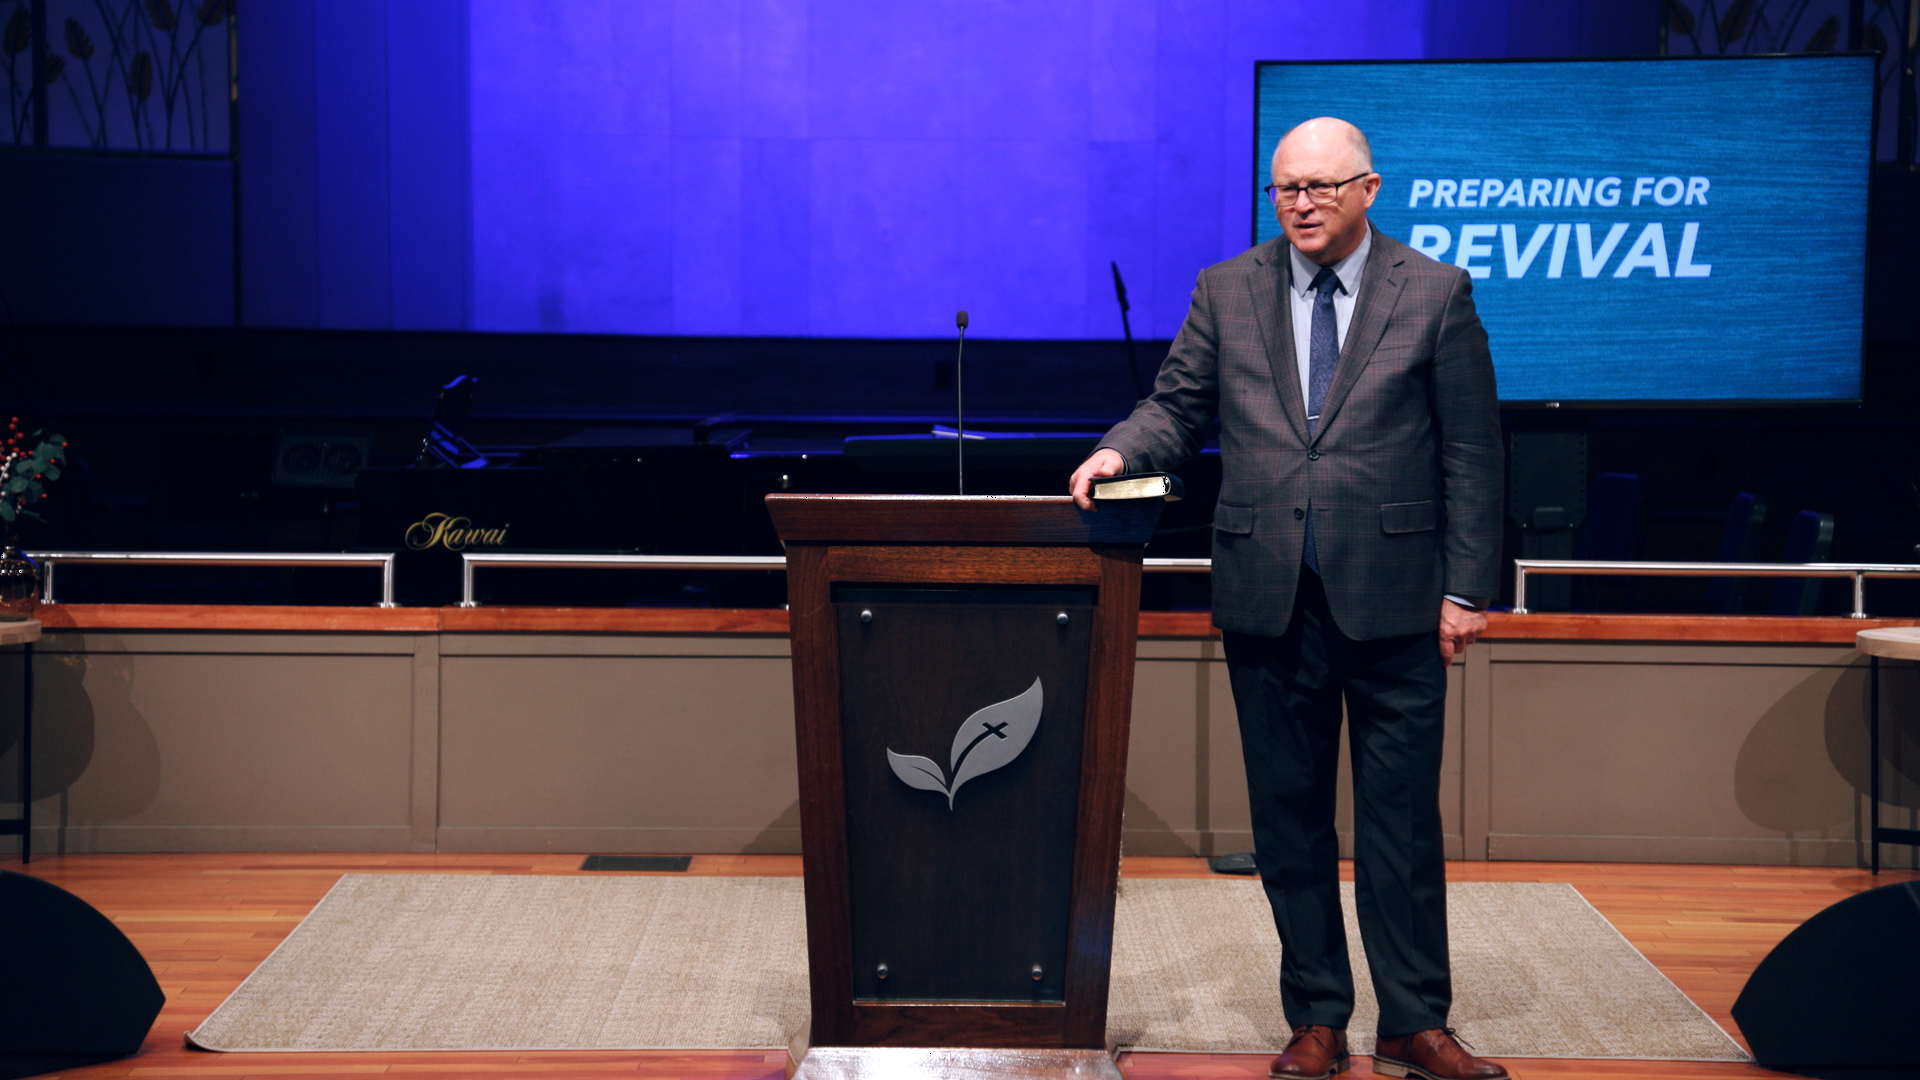 Pastor Paul Chappell: Preparing for Revival